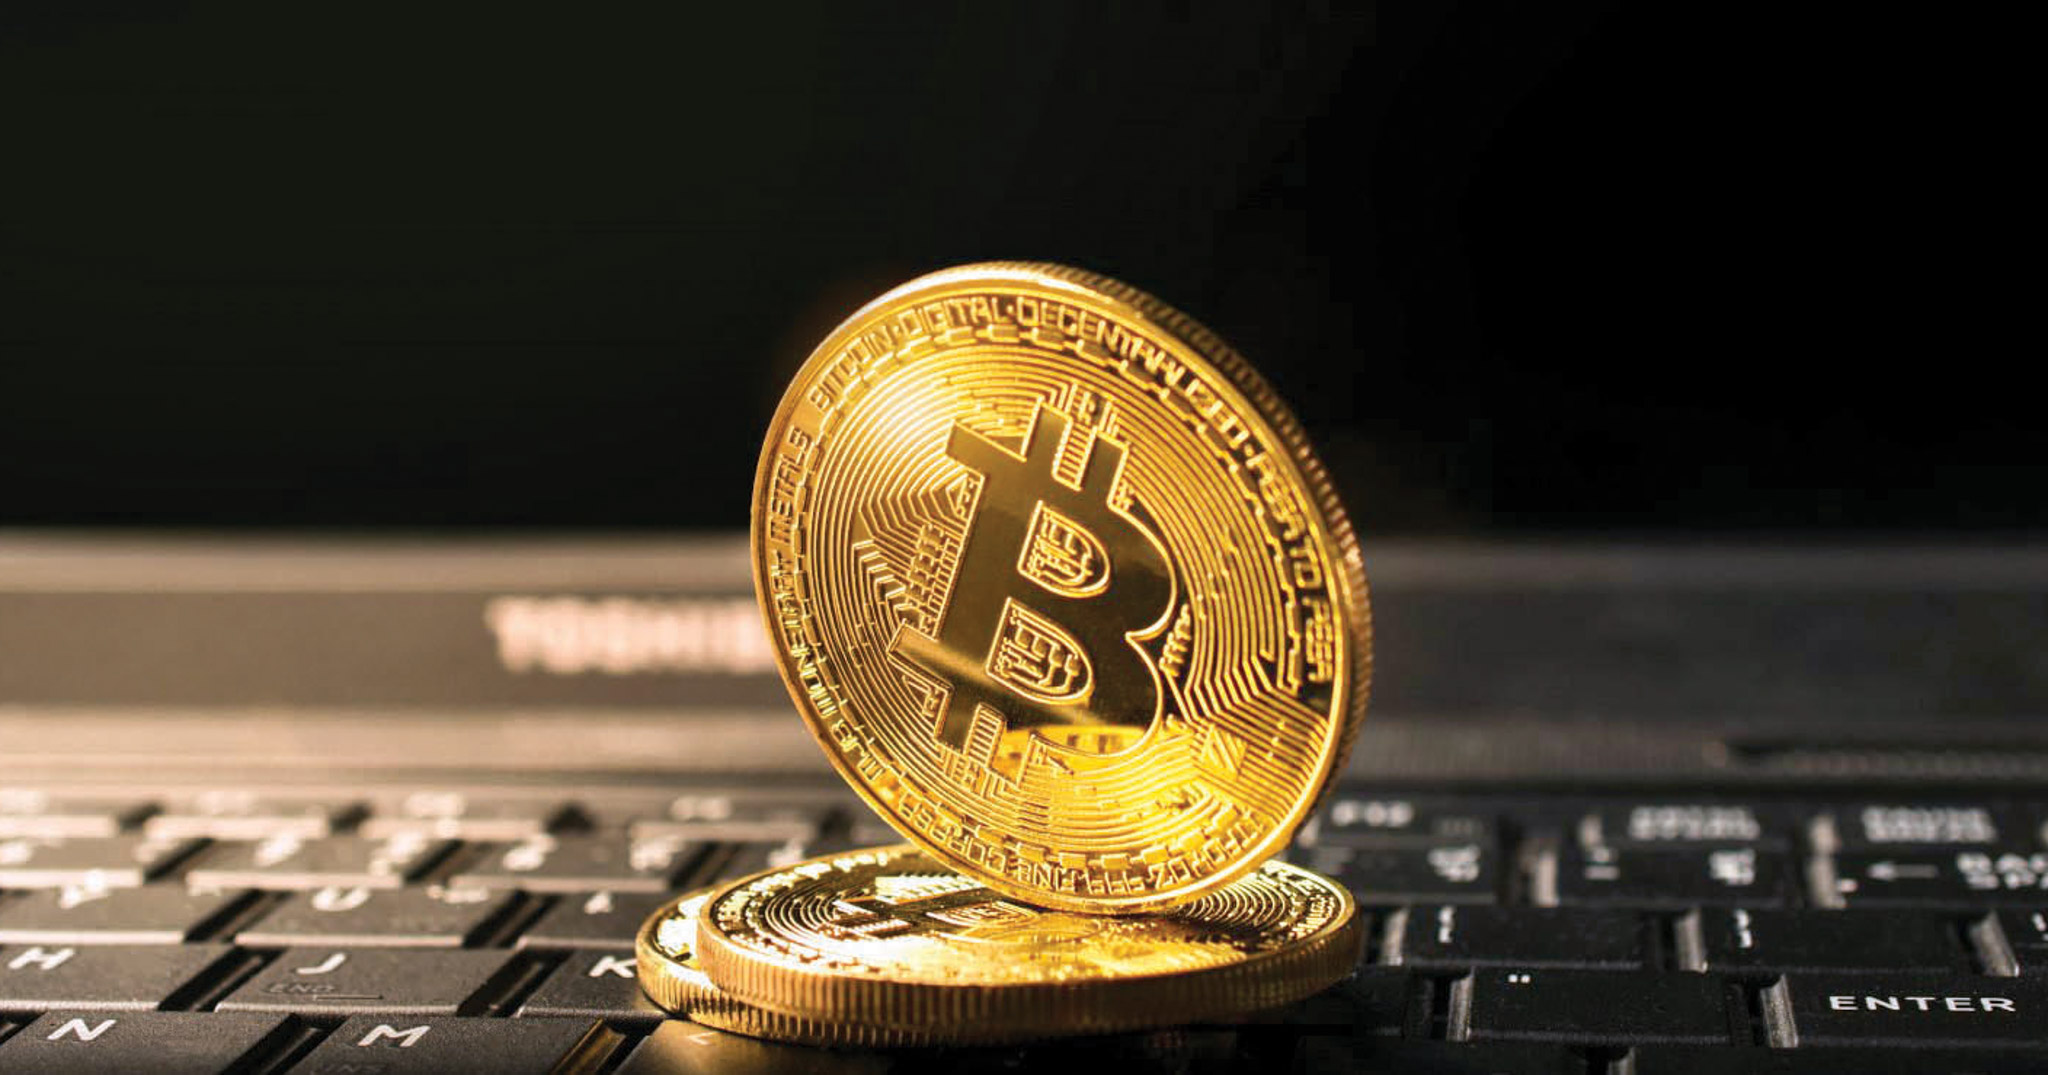 Sàn giao dịch tiền ảo Bithumb của Hàn Quốc bị cướp 31,5 triệu USD, Bitcoin rớt giá